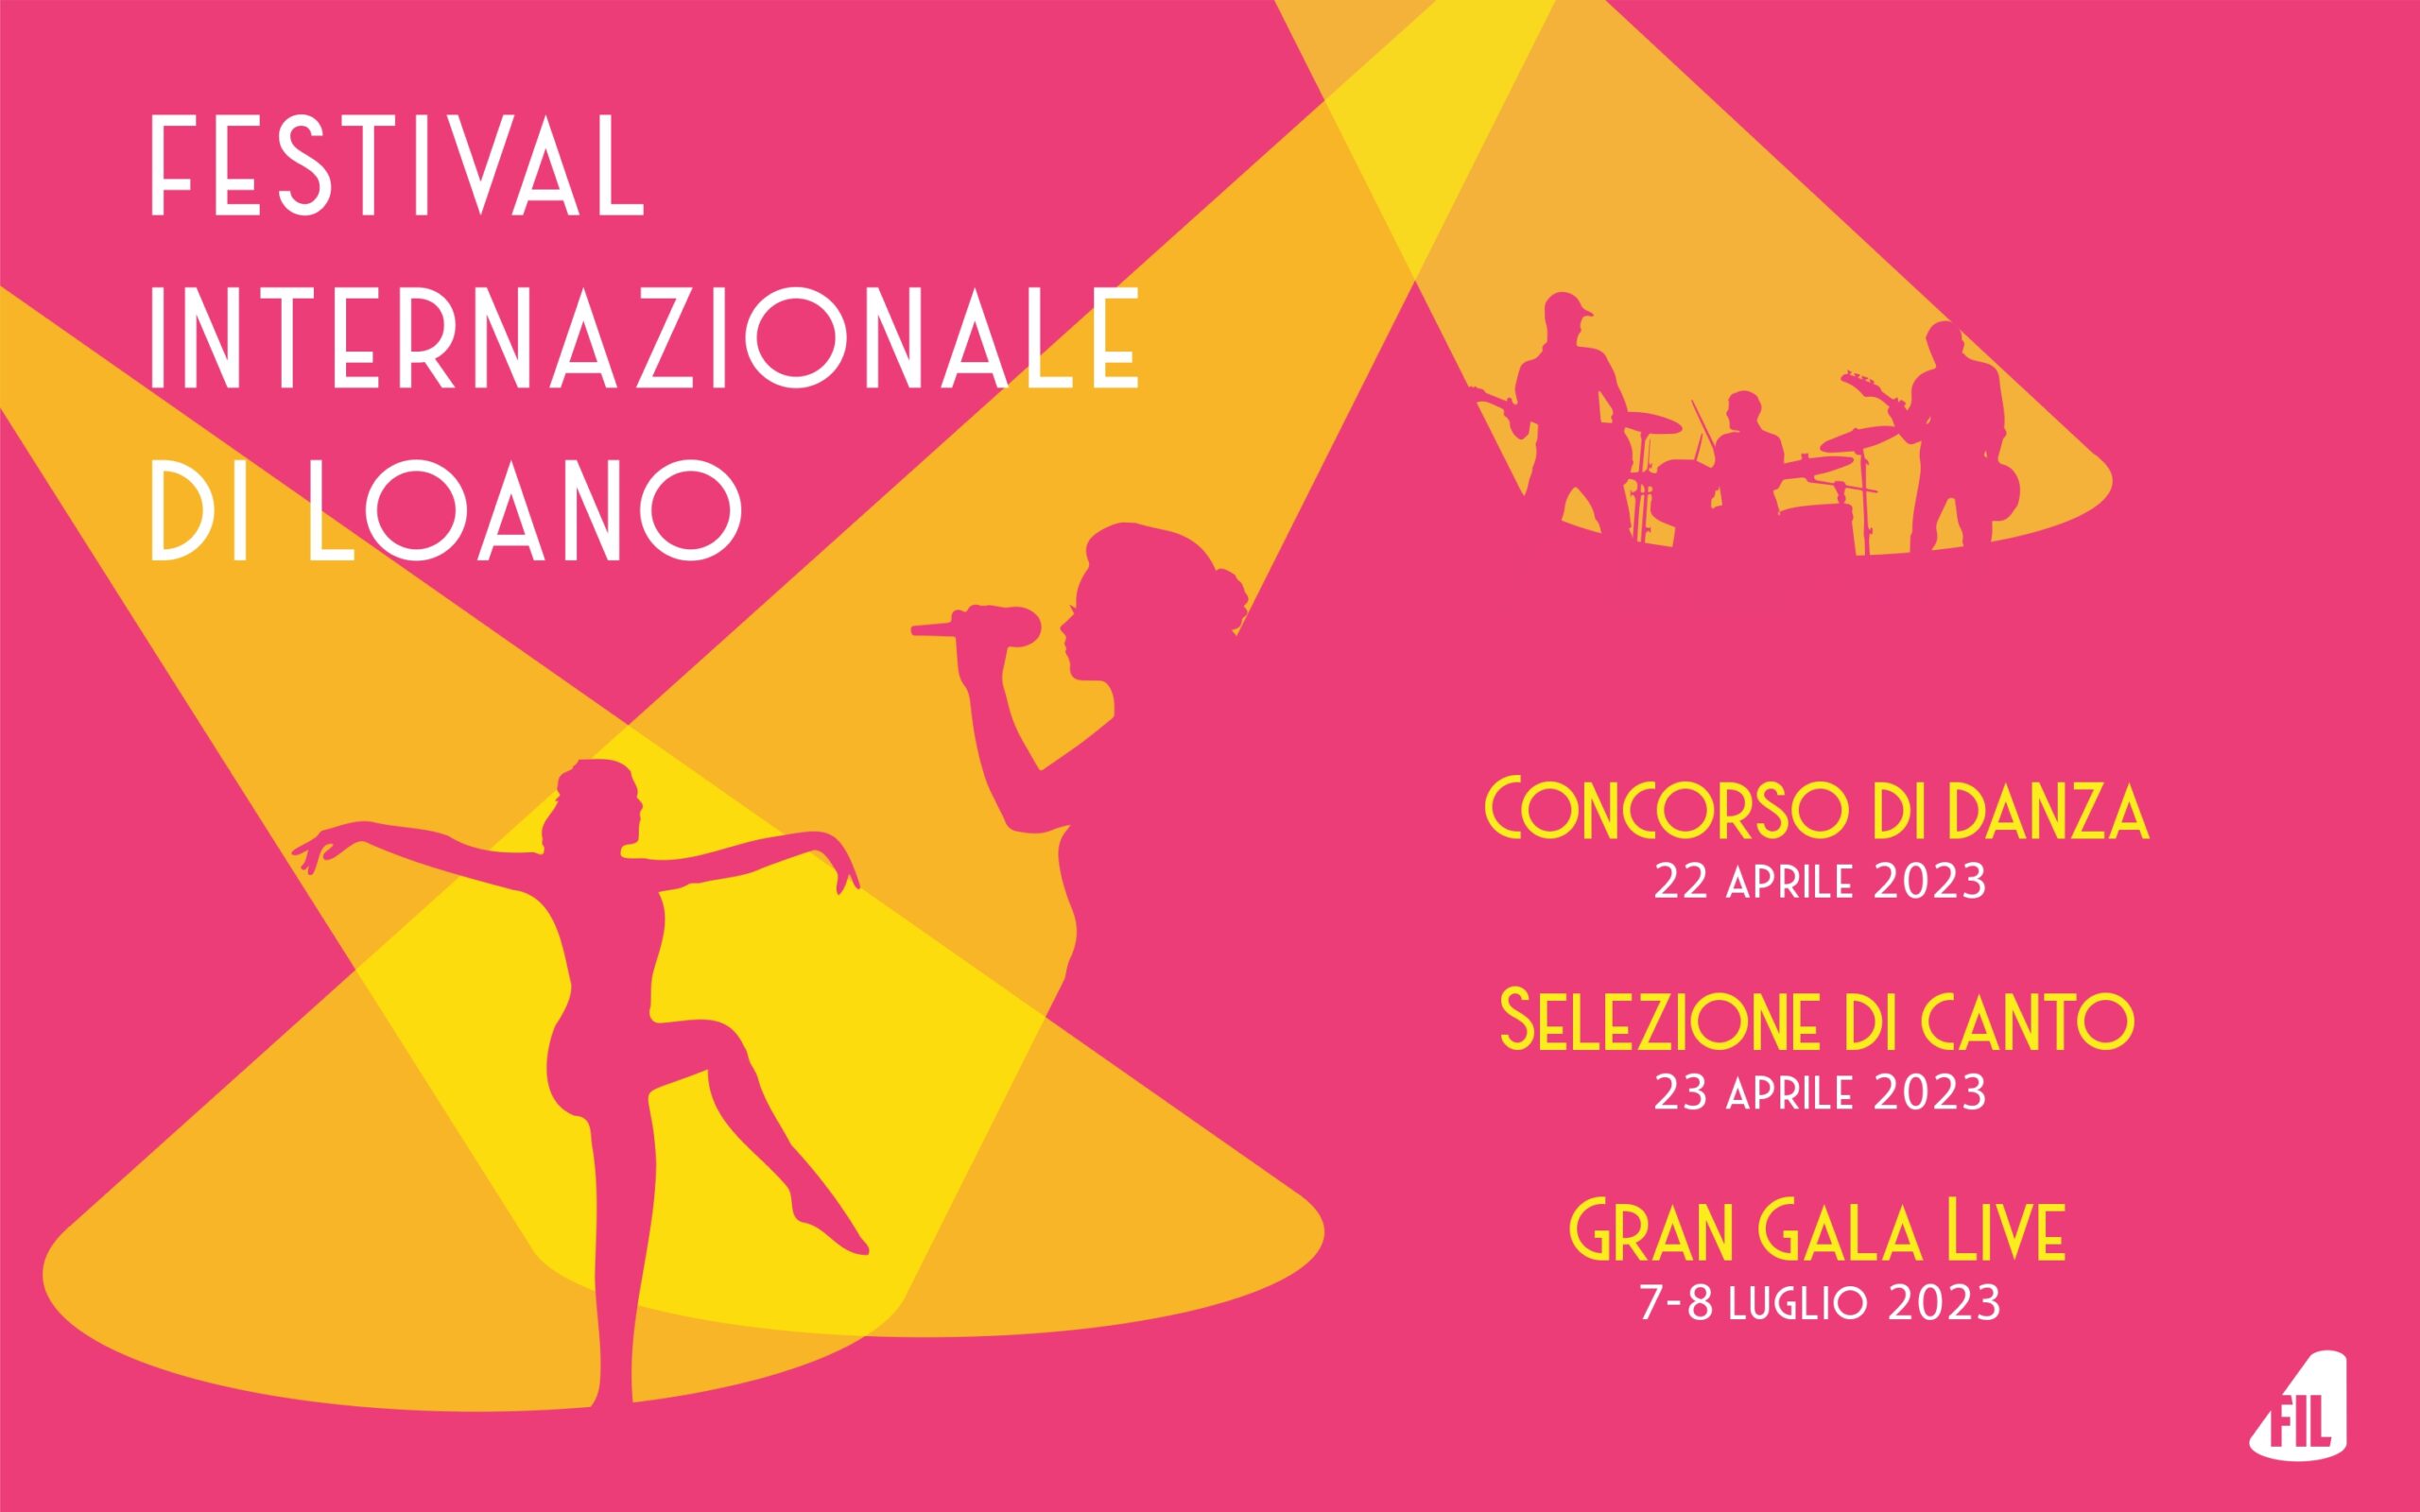 Al momento stai visualizzando FESTIVAL INTERNAZIONALE DI LOANO (FIL): Al via la 1ma edizione del concorso di danza e canto a scopo benefico